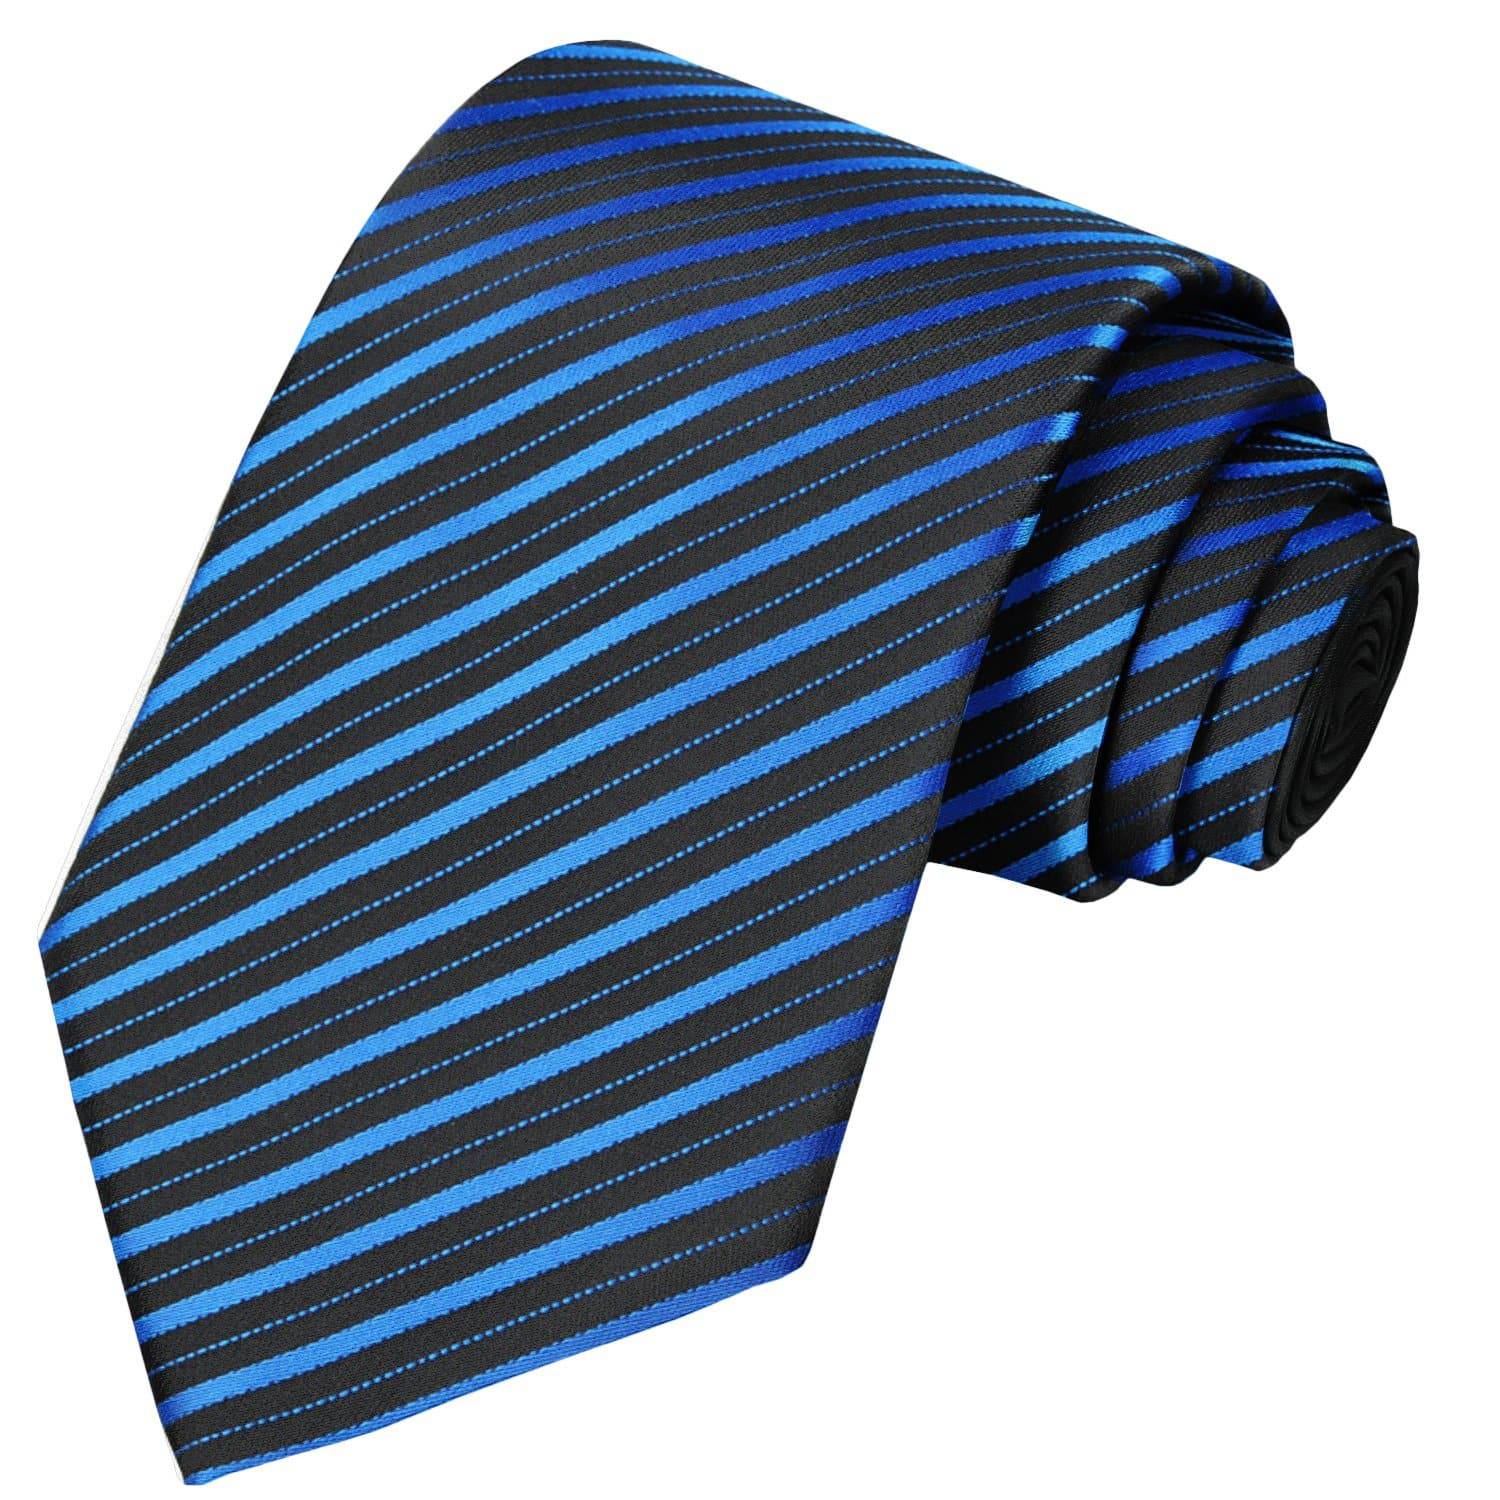 Blue-Black Striped Tie - Tie, bowtie, pocket square  | Kissties